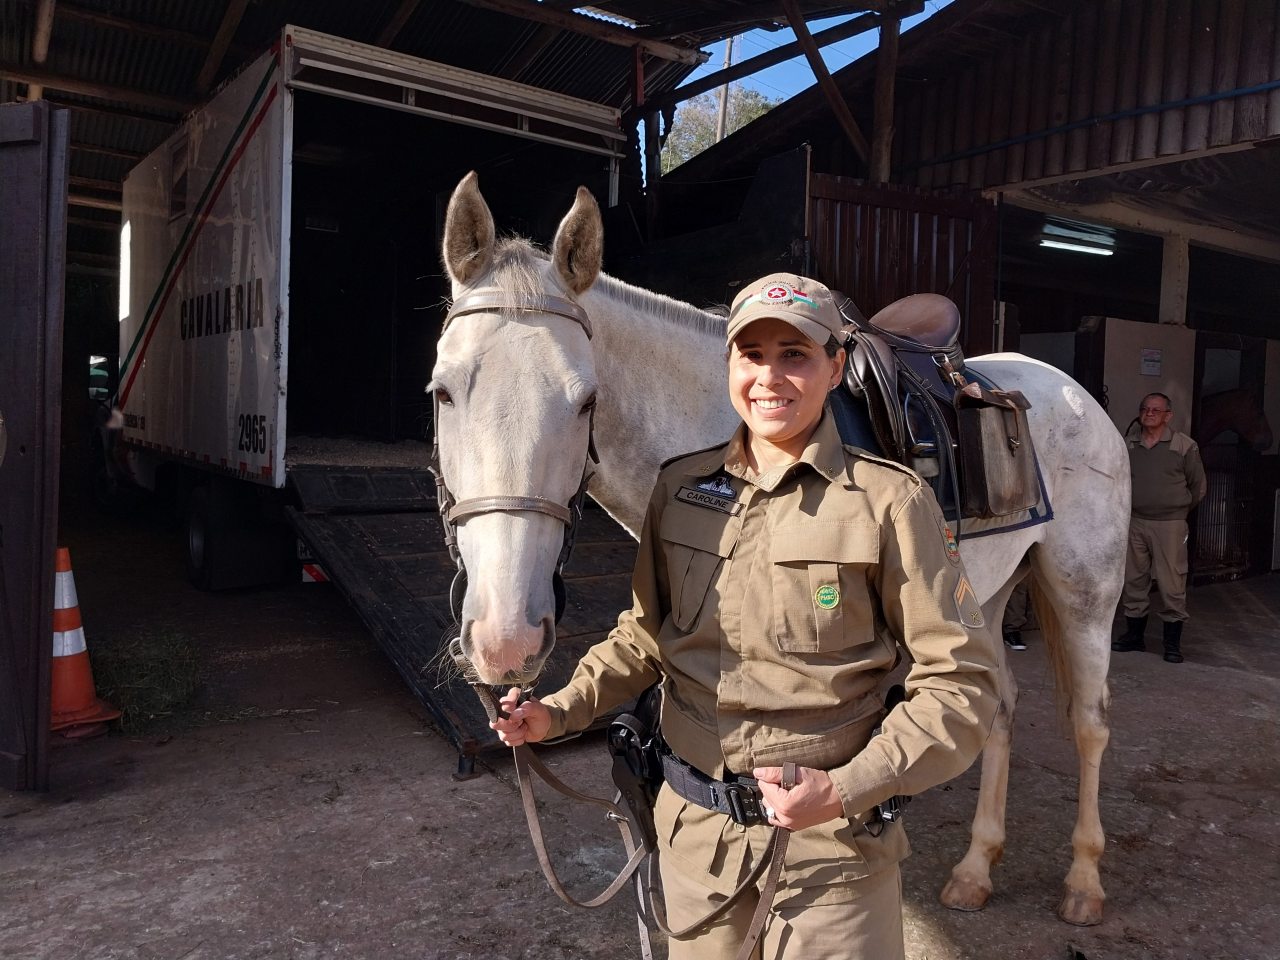 Soldado Katarine faz história e se torna 1ª mulher na Cavalaria da PM em  Criciúma